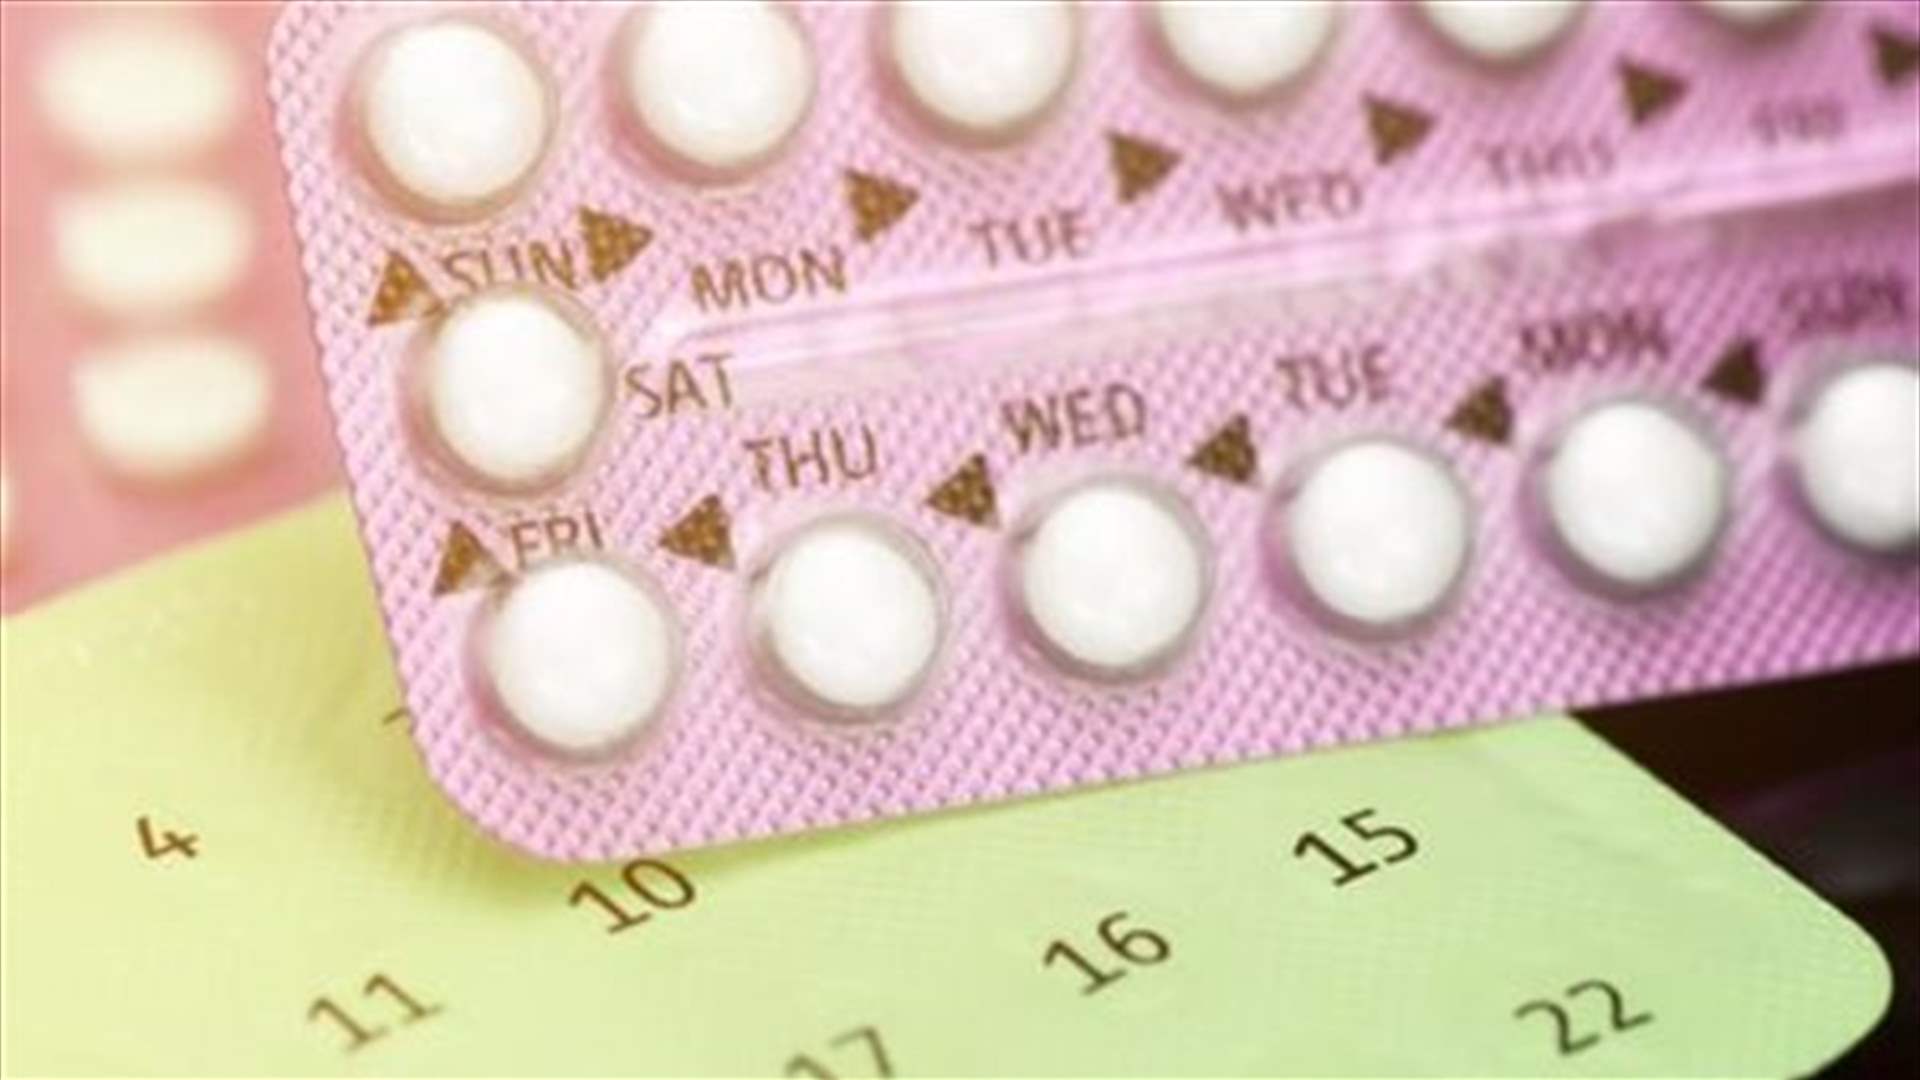 الولايات المتحدة تسمح ببيع حبوب منع الحمل بدون وصفة طبية للمرة الأولى